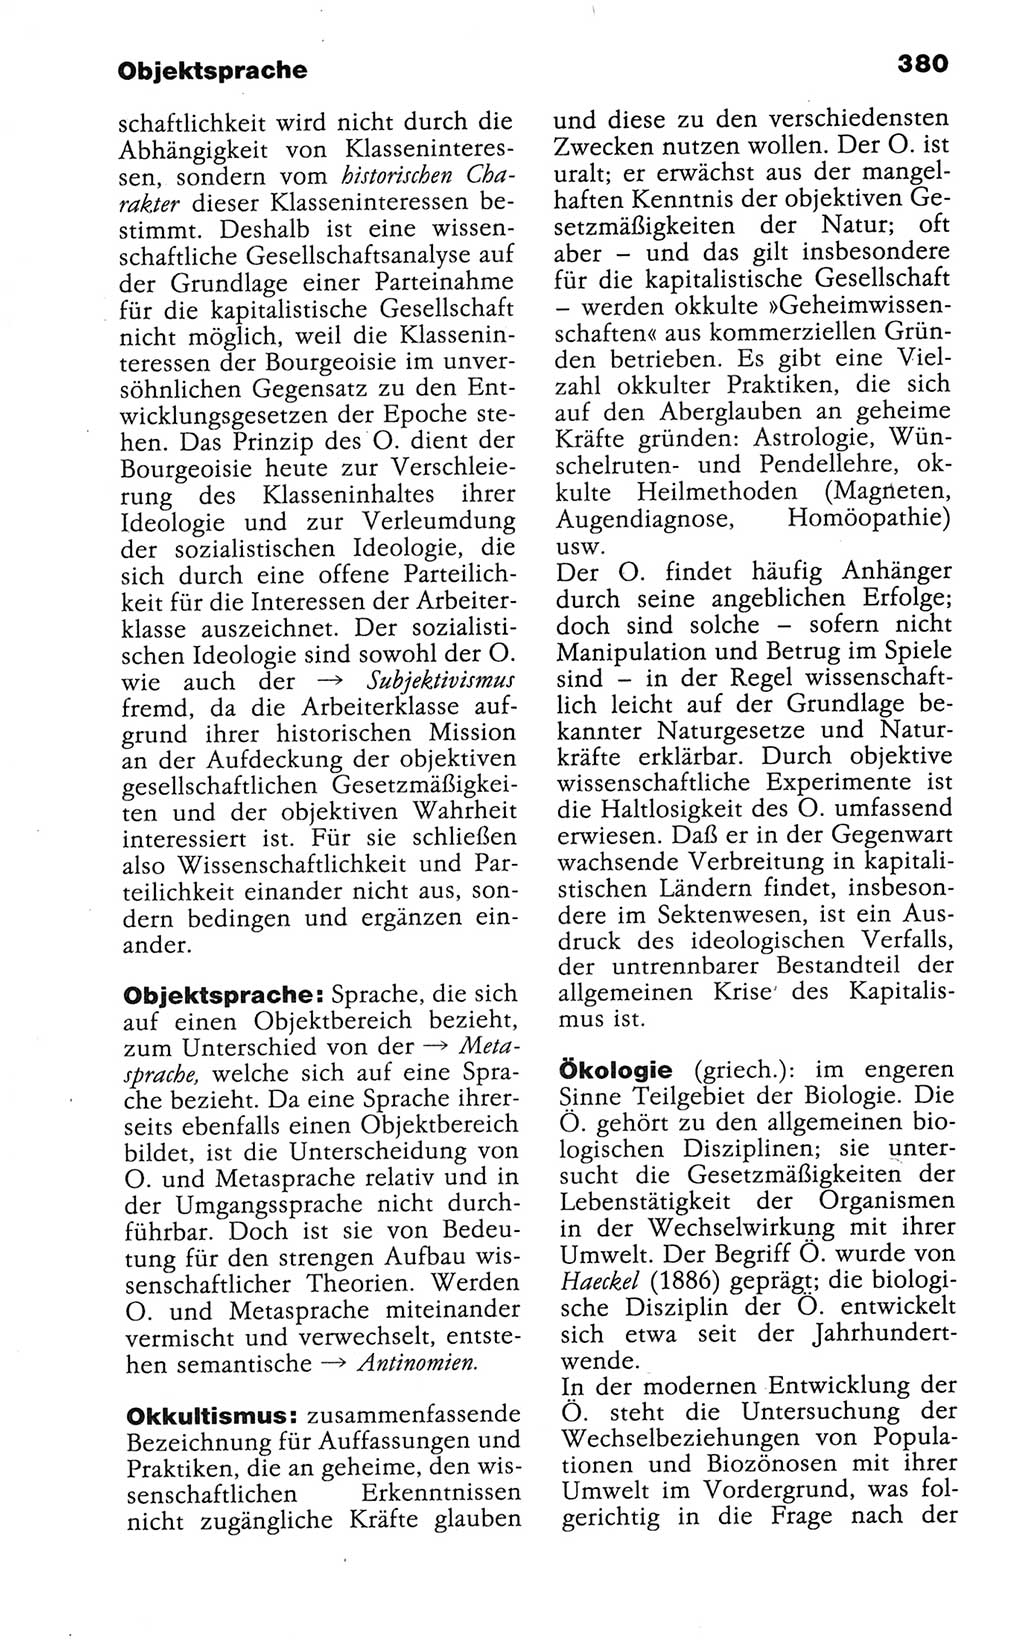 Wörterbuch der marxistisch-leninistischen Philosophie [Deutsche Demokratische Republik (DDR)] 1986, Seite 380 (Wb. ML Phil. DDR 1986, S. 380)